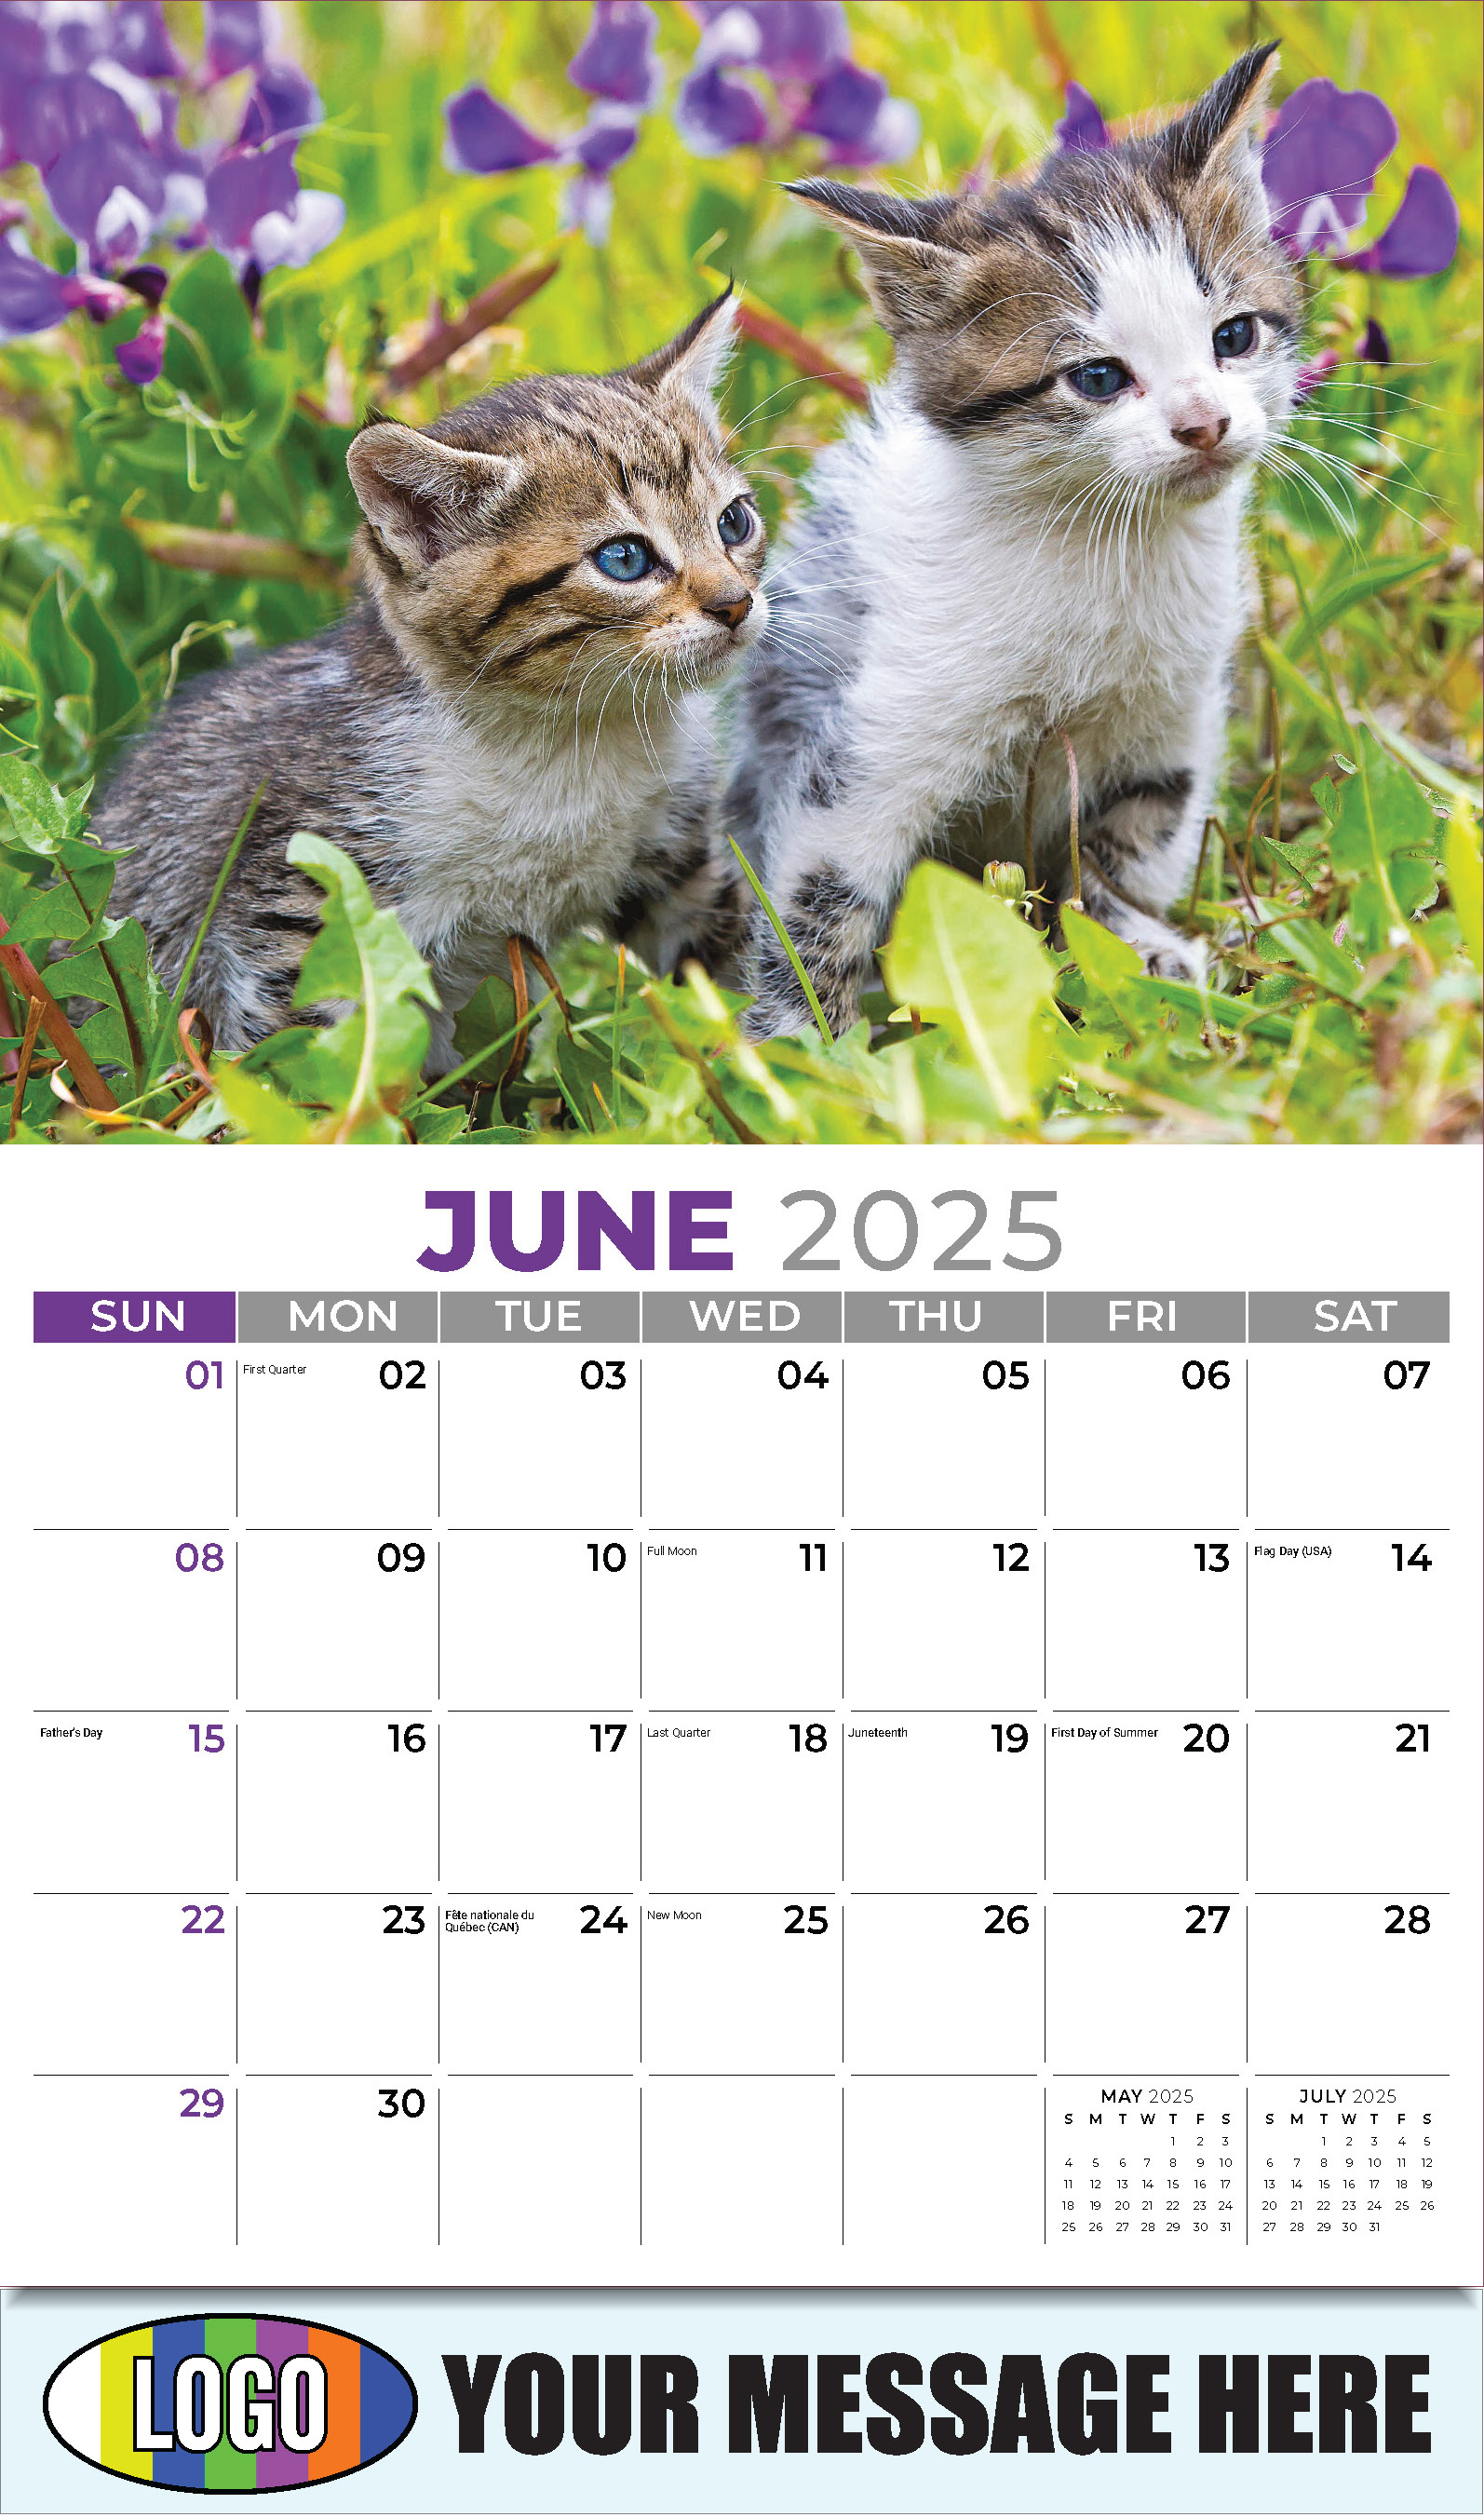 Kittens 2025 Business Promo Wall Calendar - June